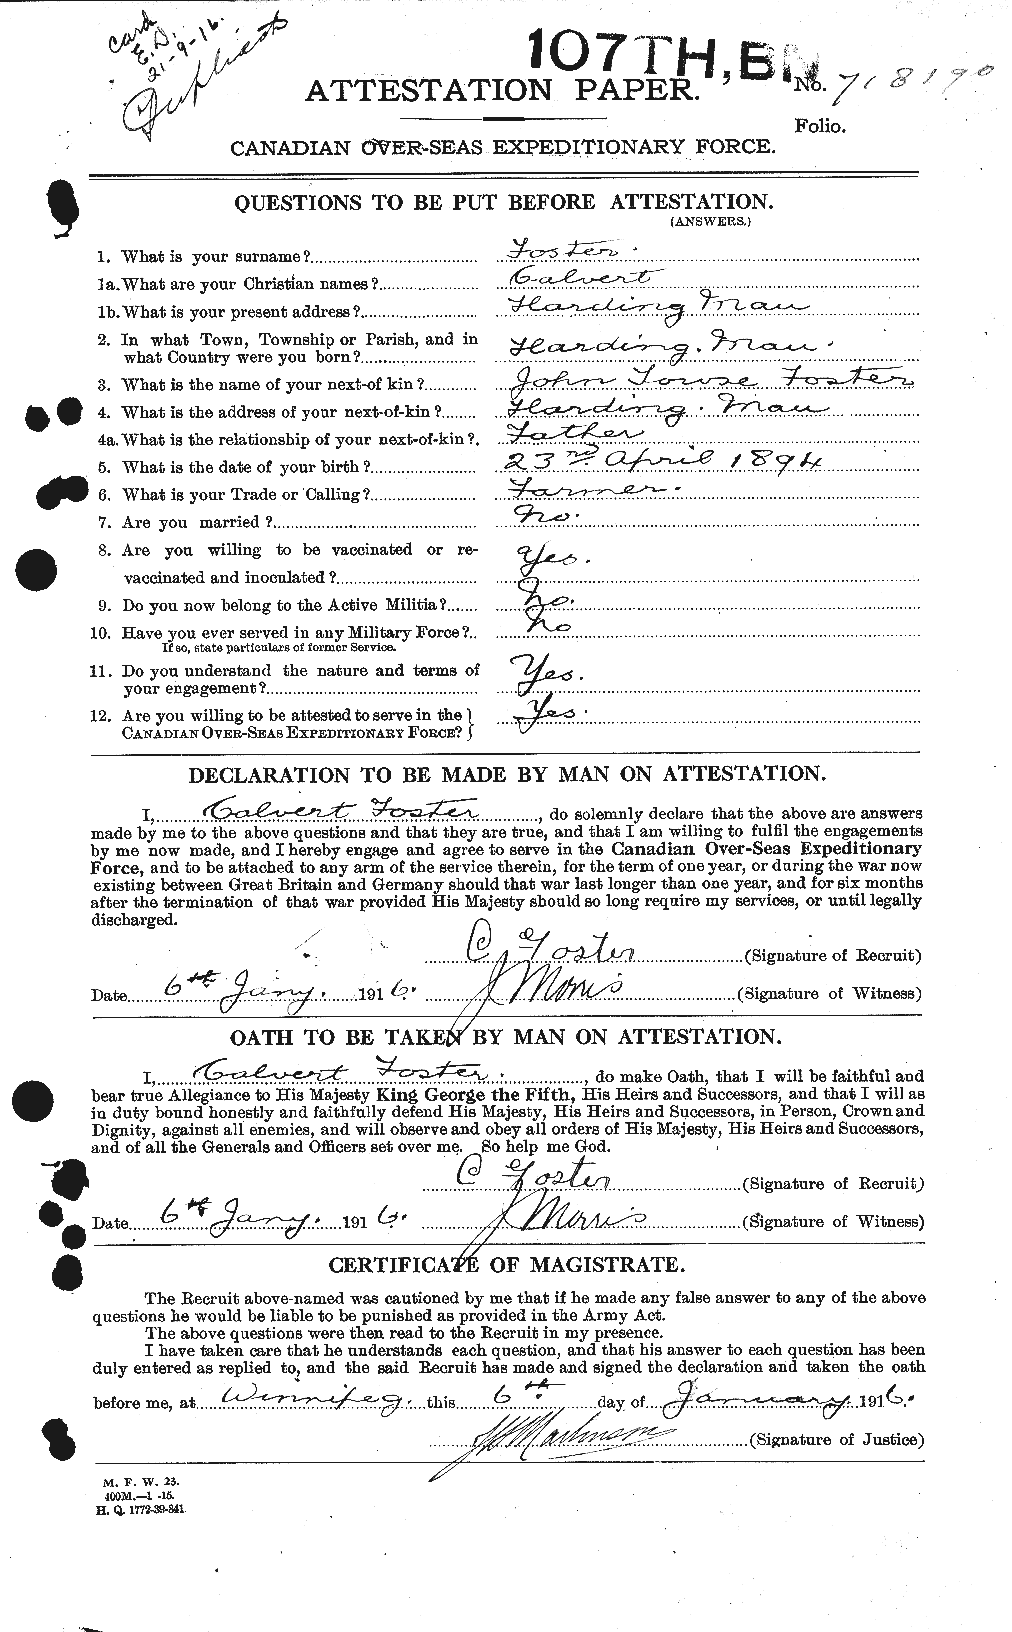 Dossiers du Personnel de la Première Guerre mondiale - CEC 330493a